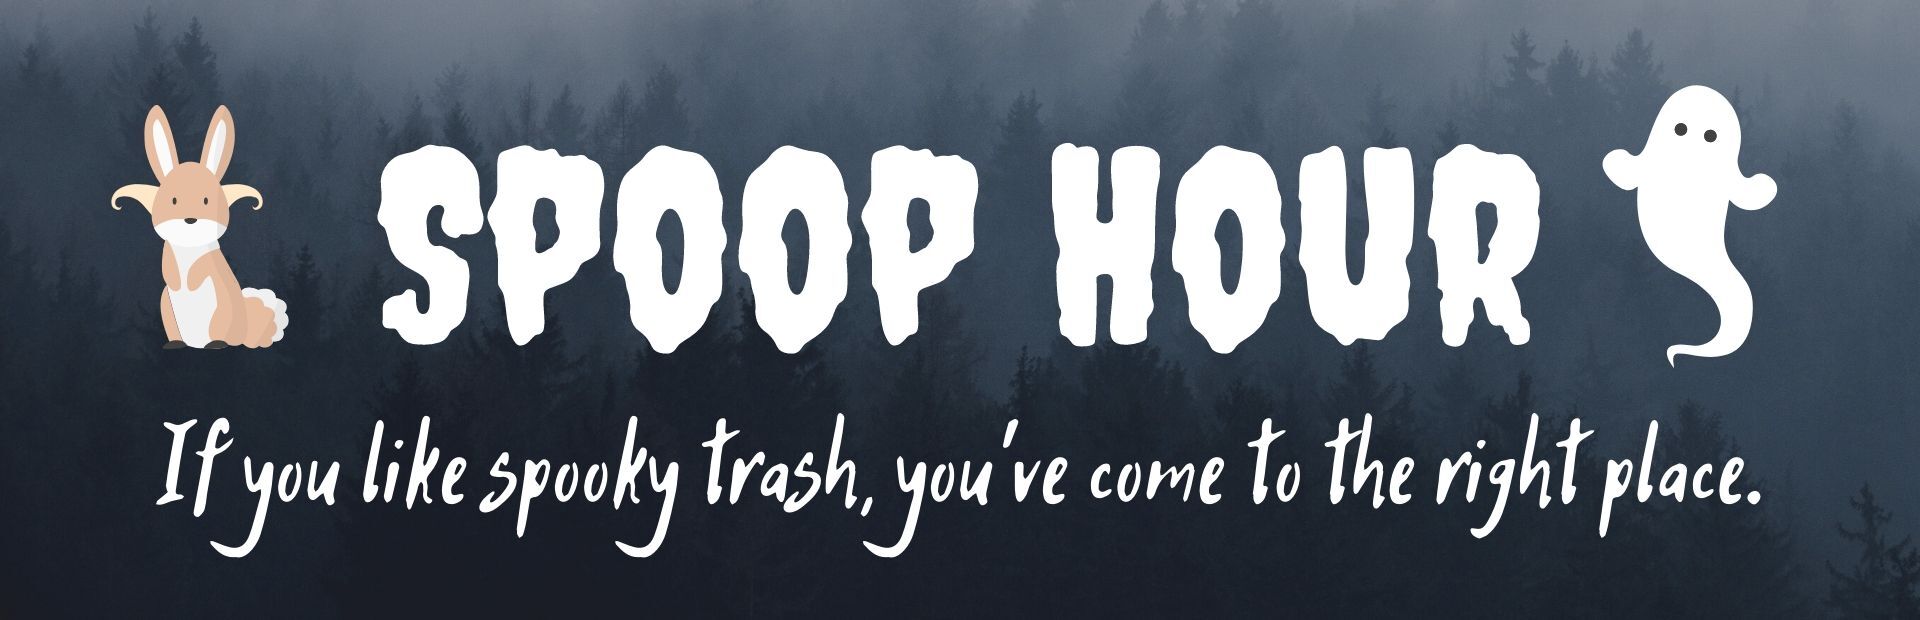 Spoop Hour header image 1